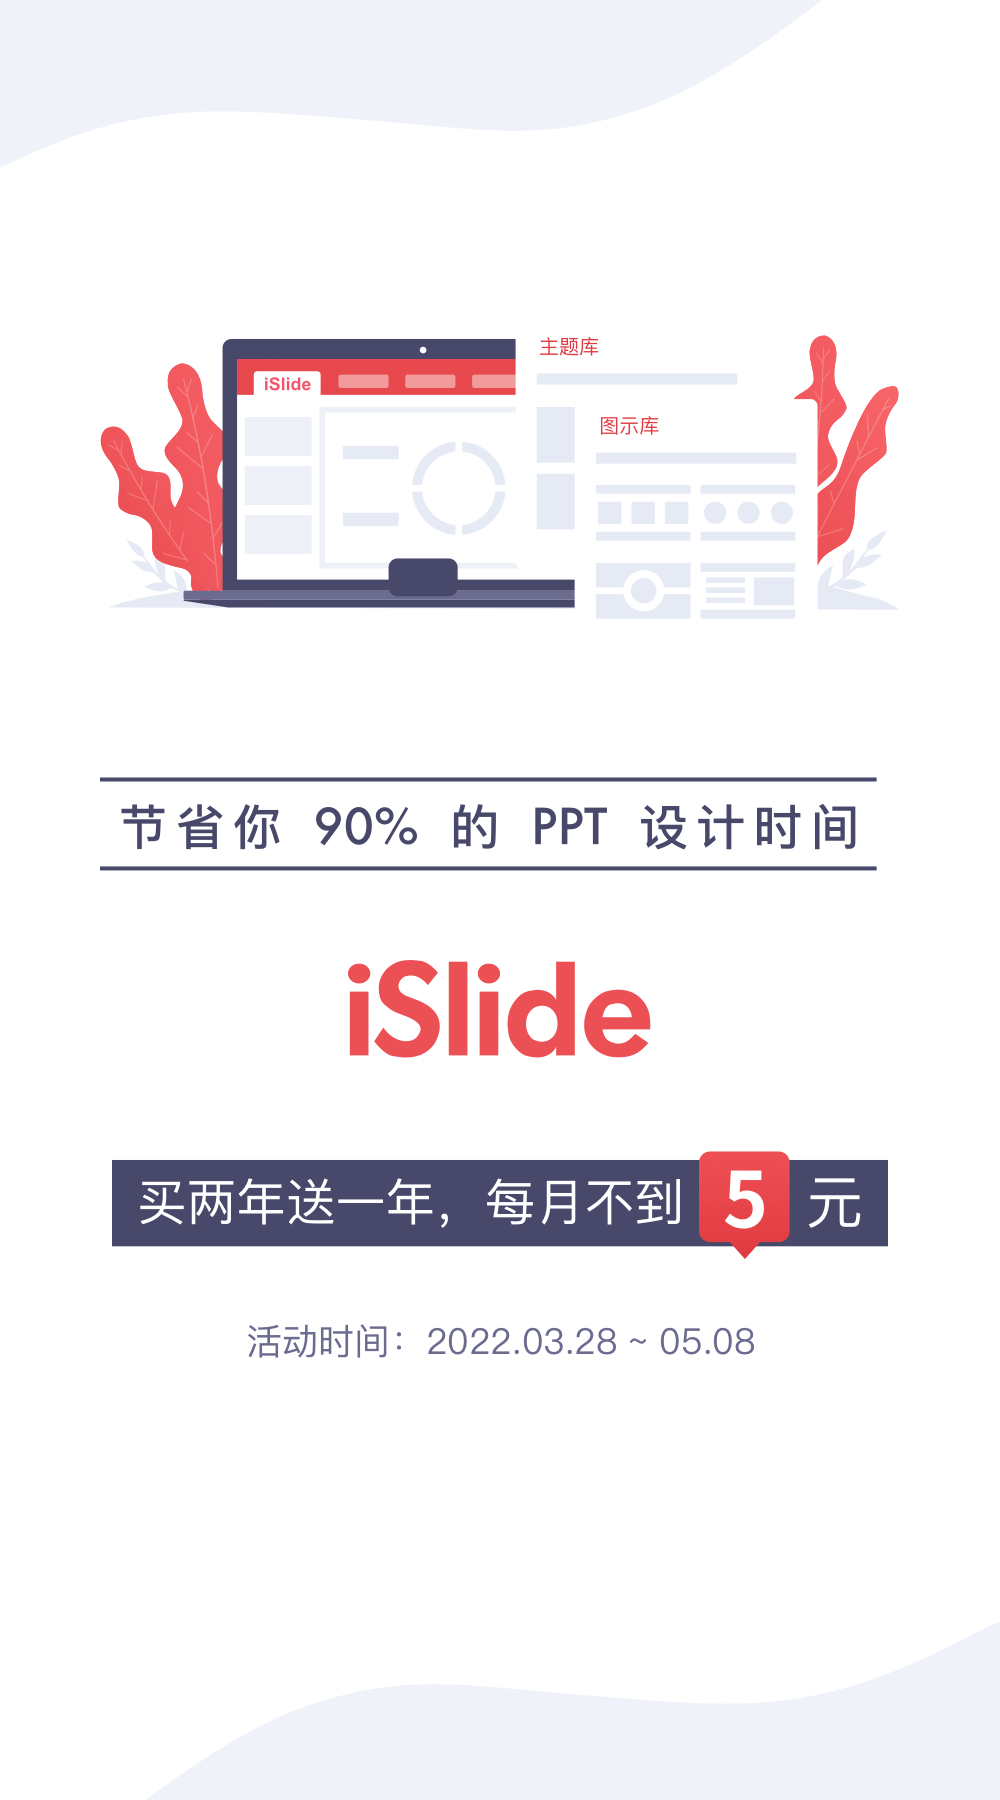 【正版特惠】Office设计美化插件 iSlide，6周年回馈 - 果核剥壳